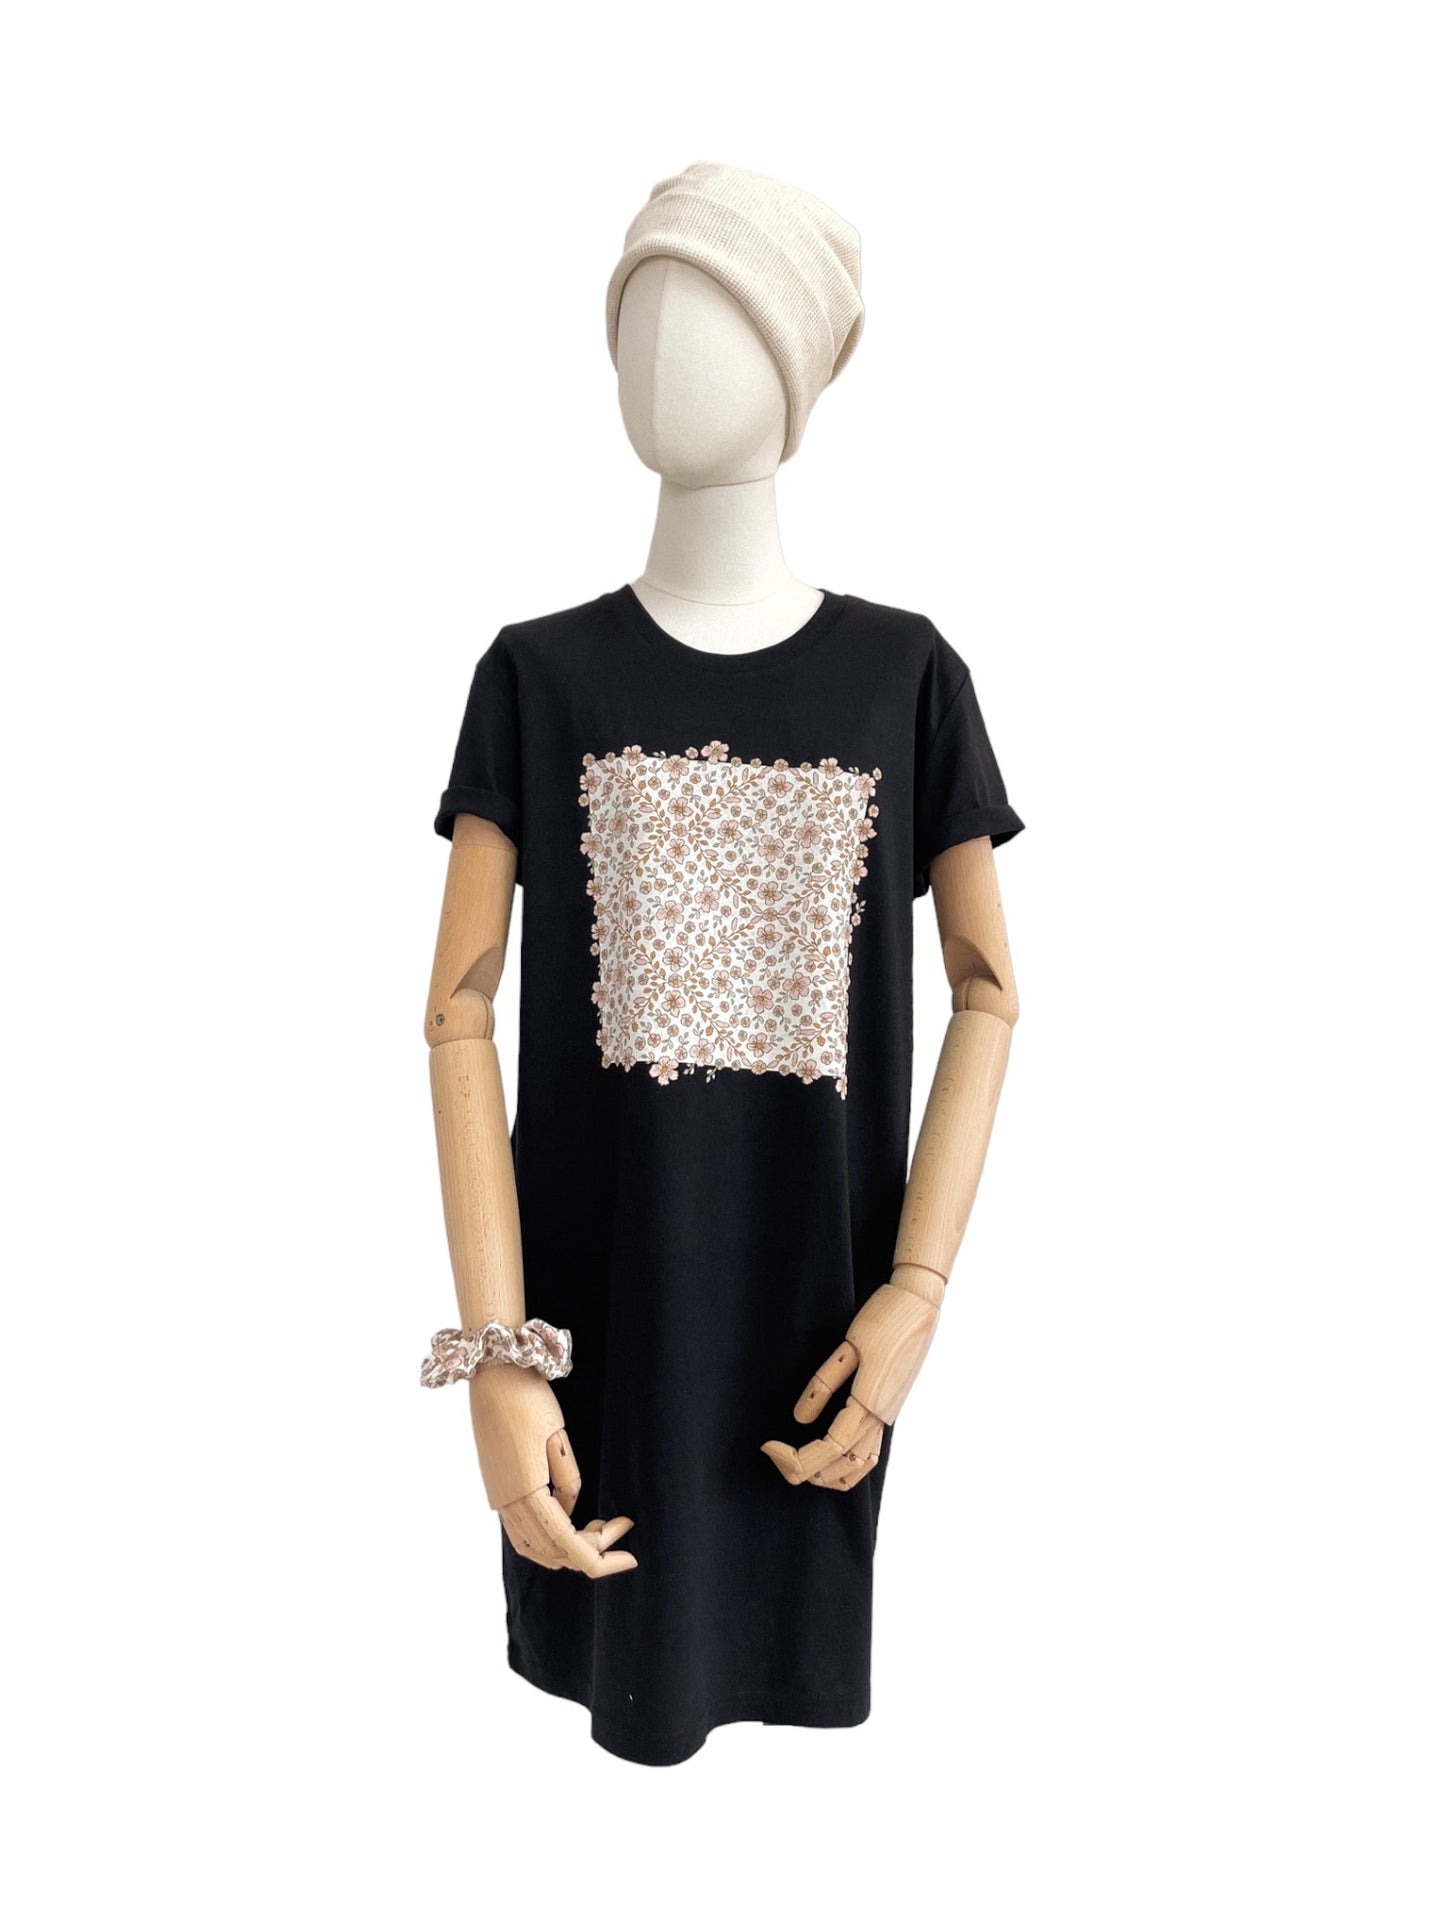 T-shirt dress / floral garland / black